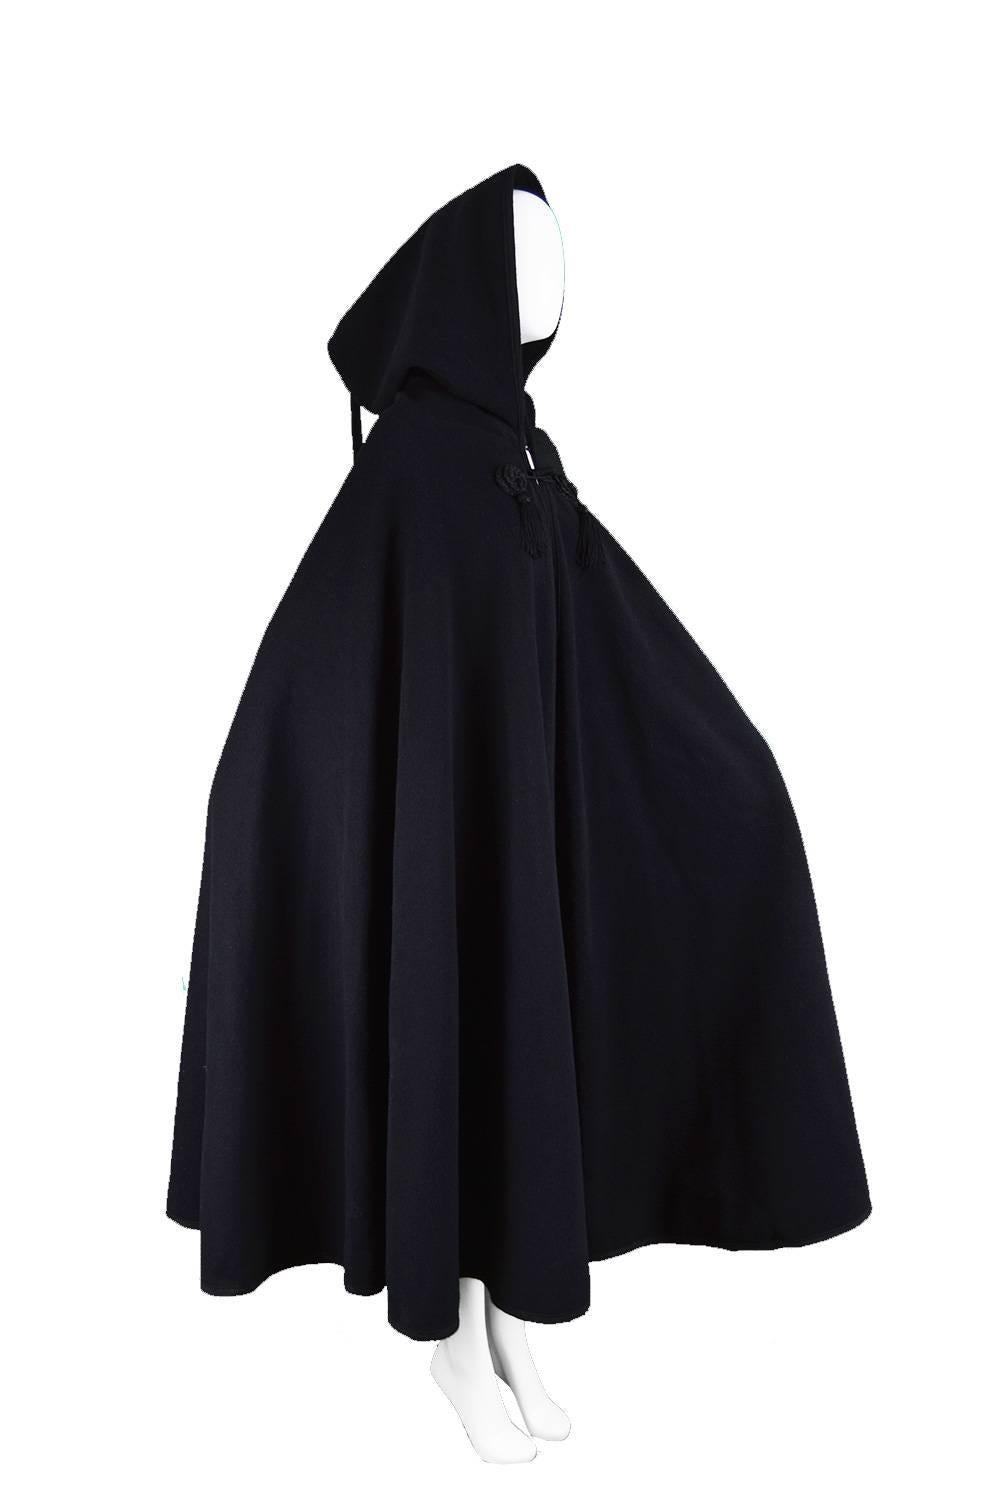 Women's Harrods Younger Set Vintage Tasselled Black Wool Cape Cloak, 1960s